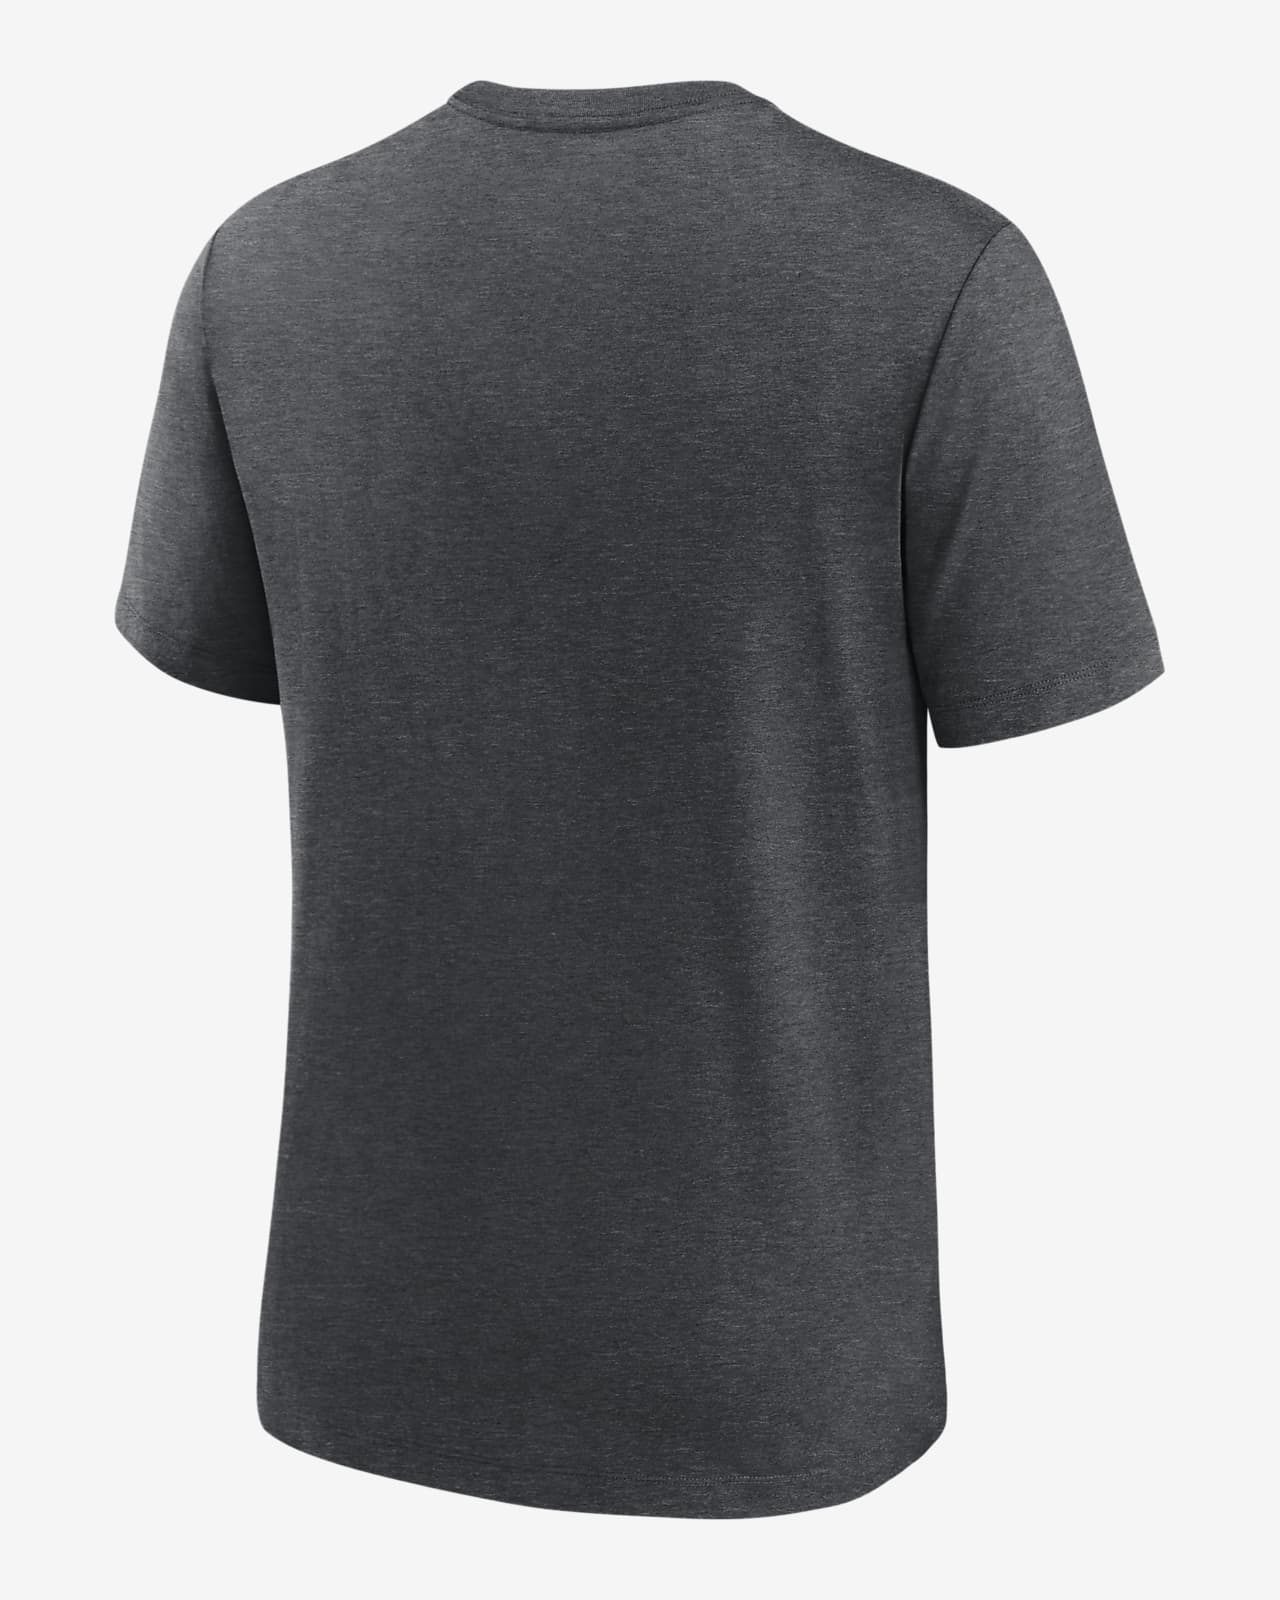 MLB NEW YORK YANKEES Basic Back Logo T-Shirt (Black)